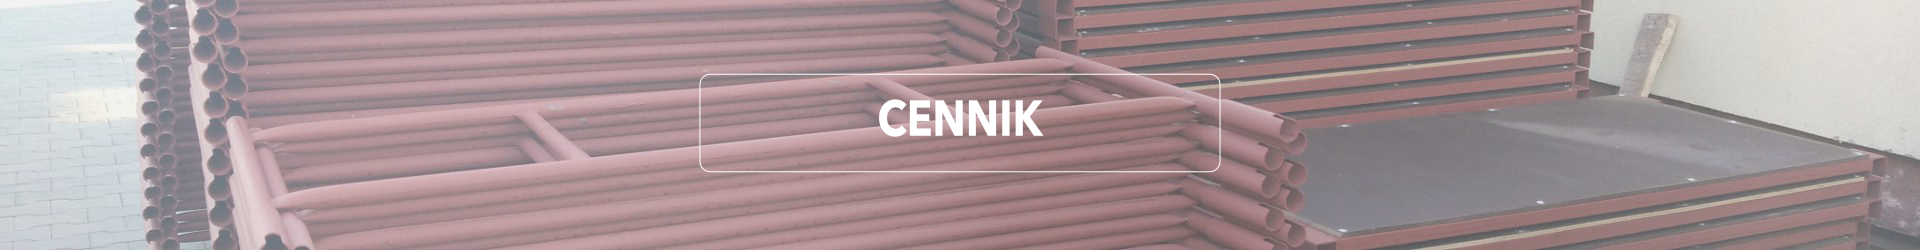 CENNIK1-1920x250